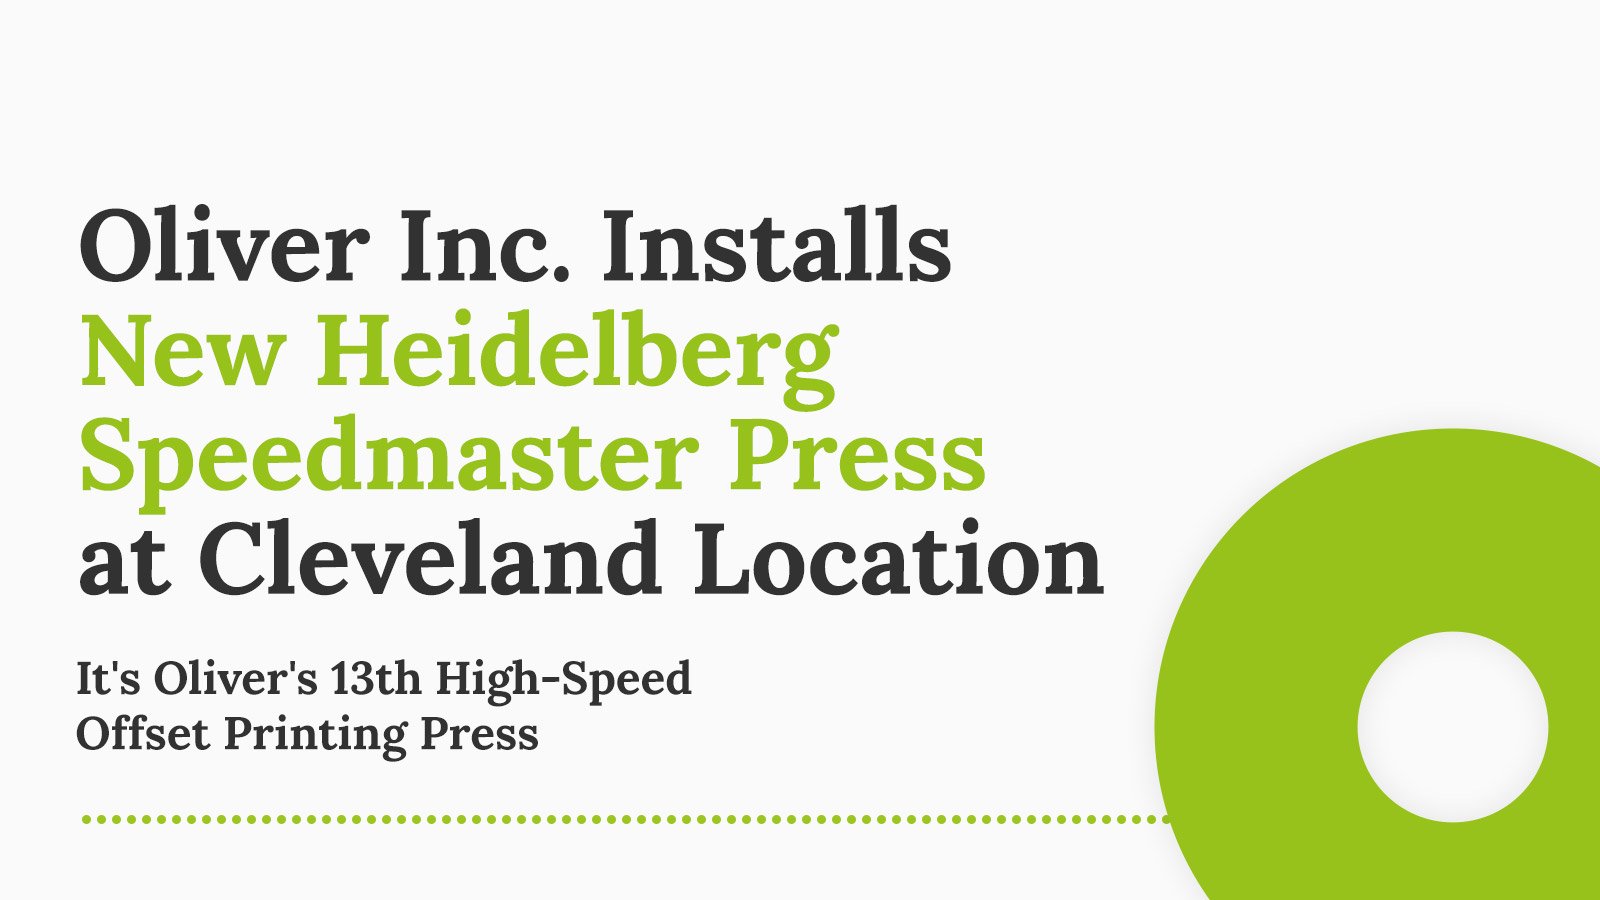 Oliver Inc. Installs New Heidelberg Speedmaster Press at Cleveland Location